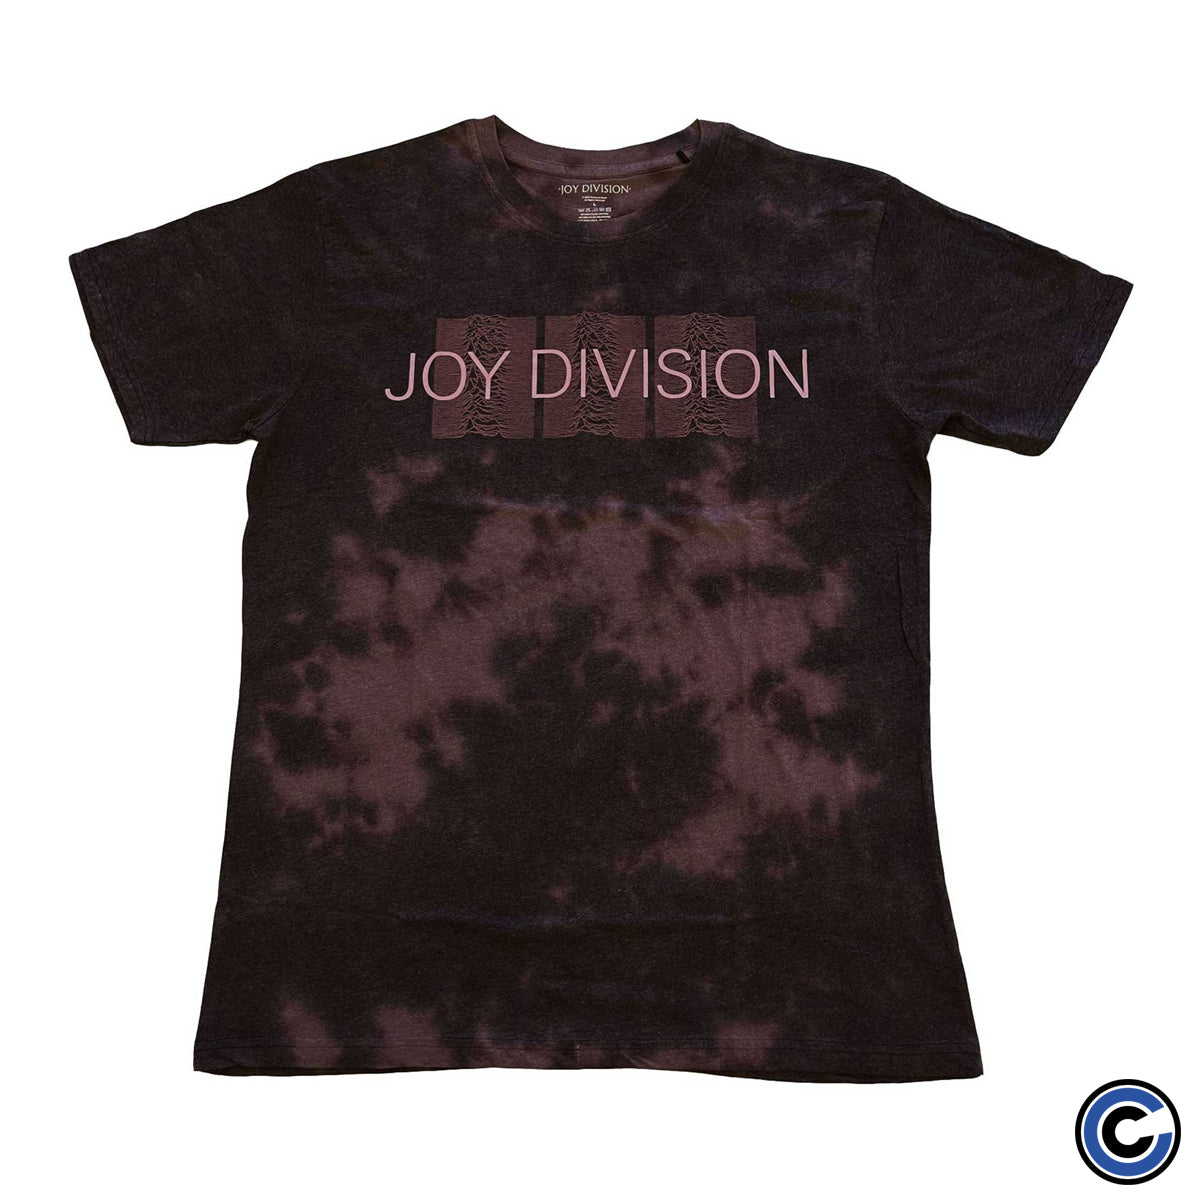 Joy Division "Mini Repeater Dip Dye" Shirt